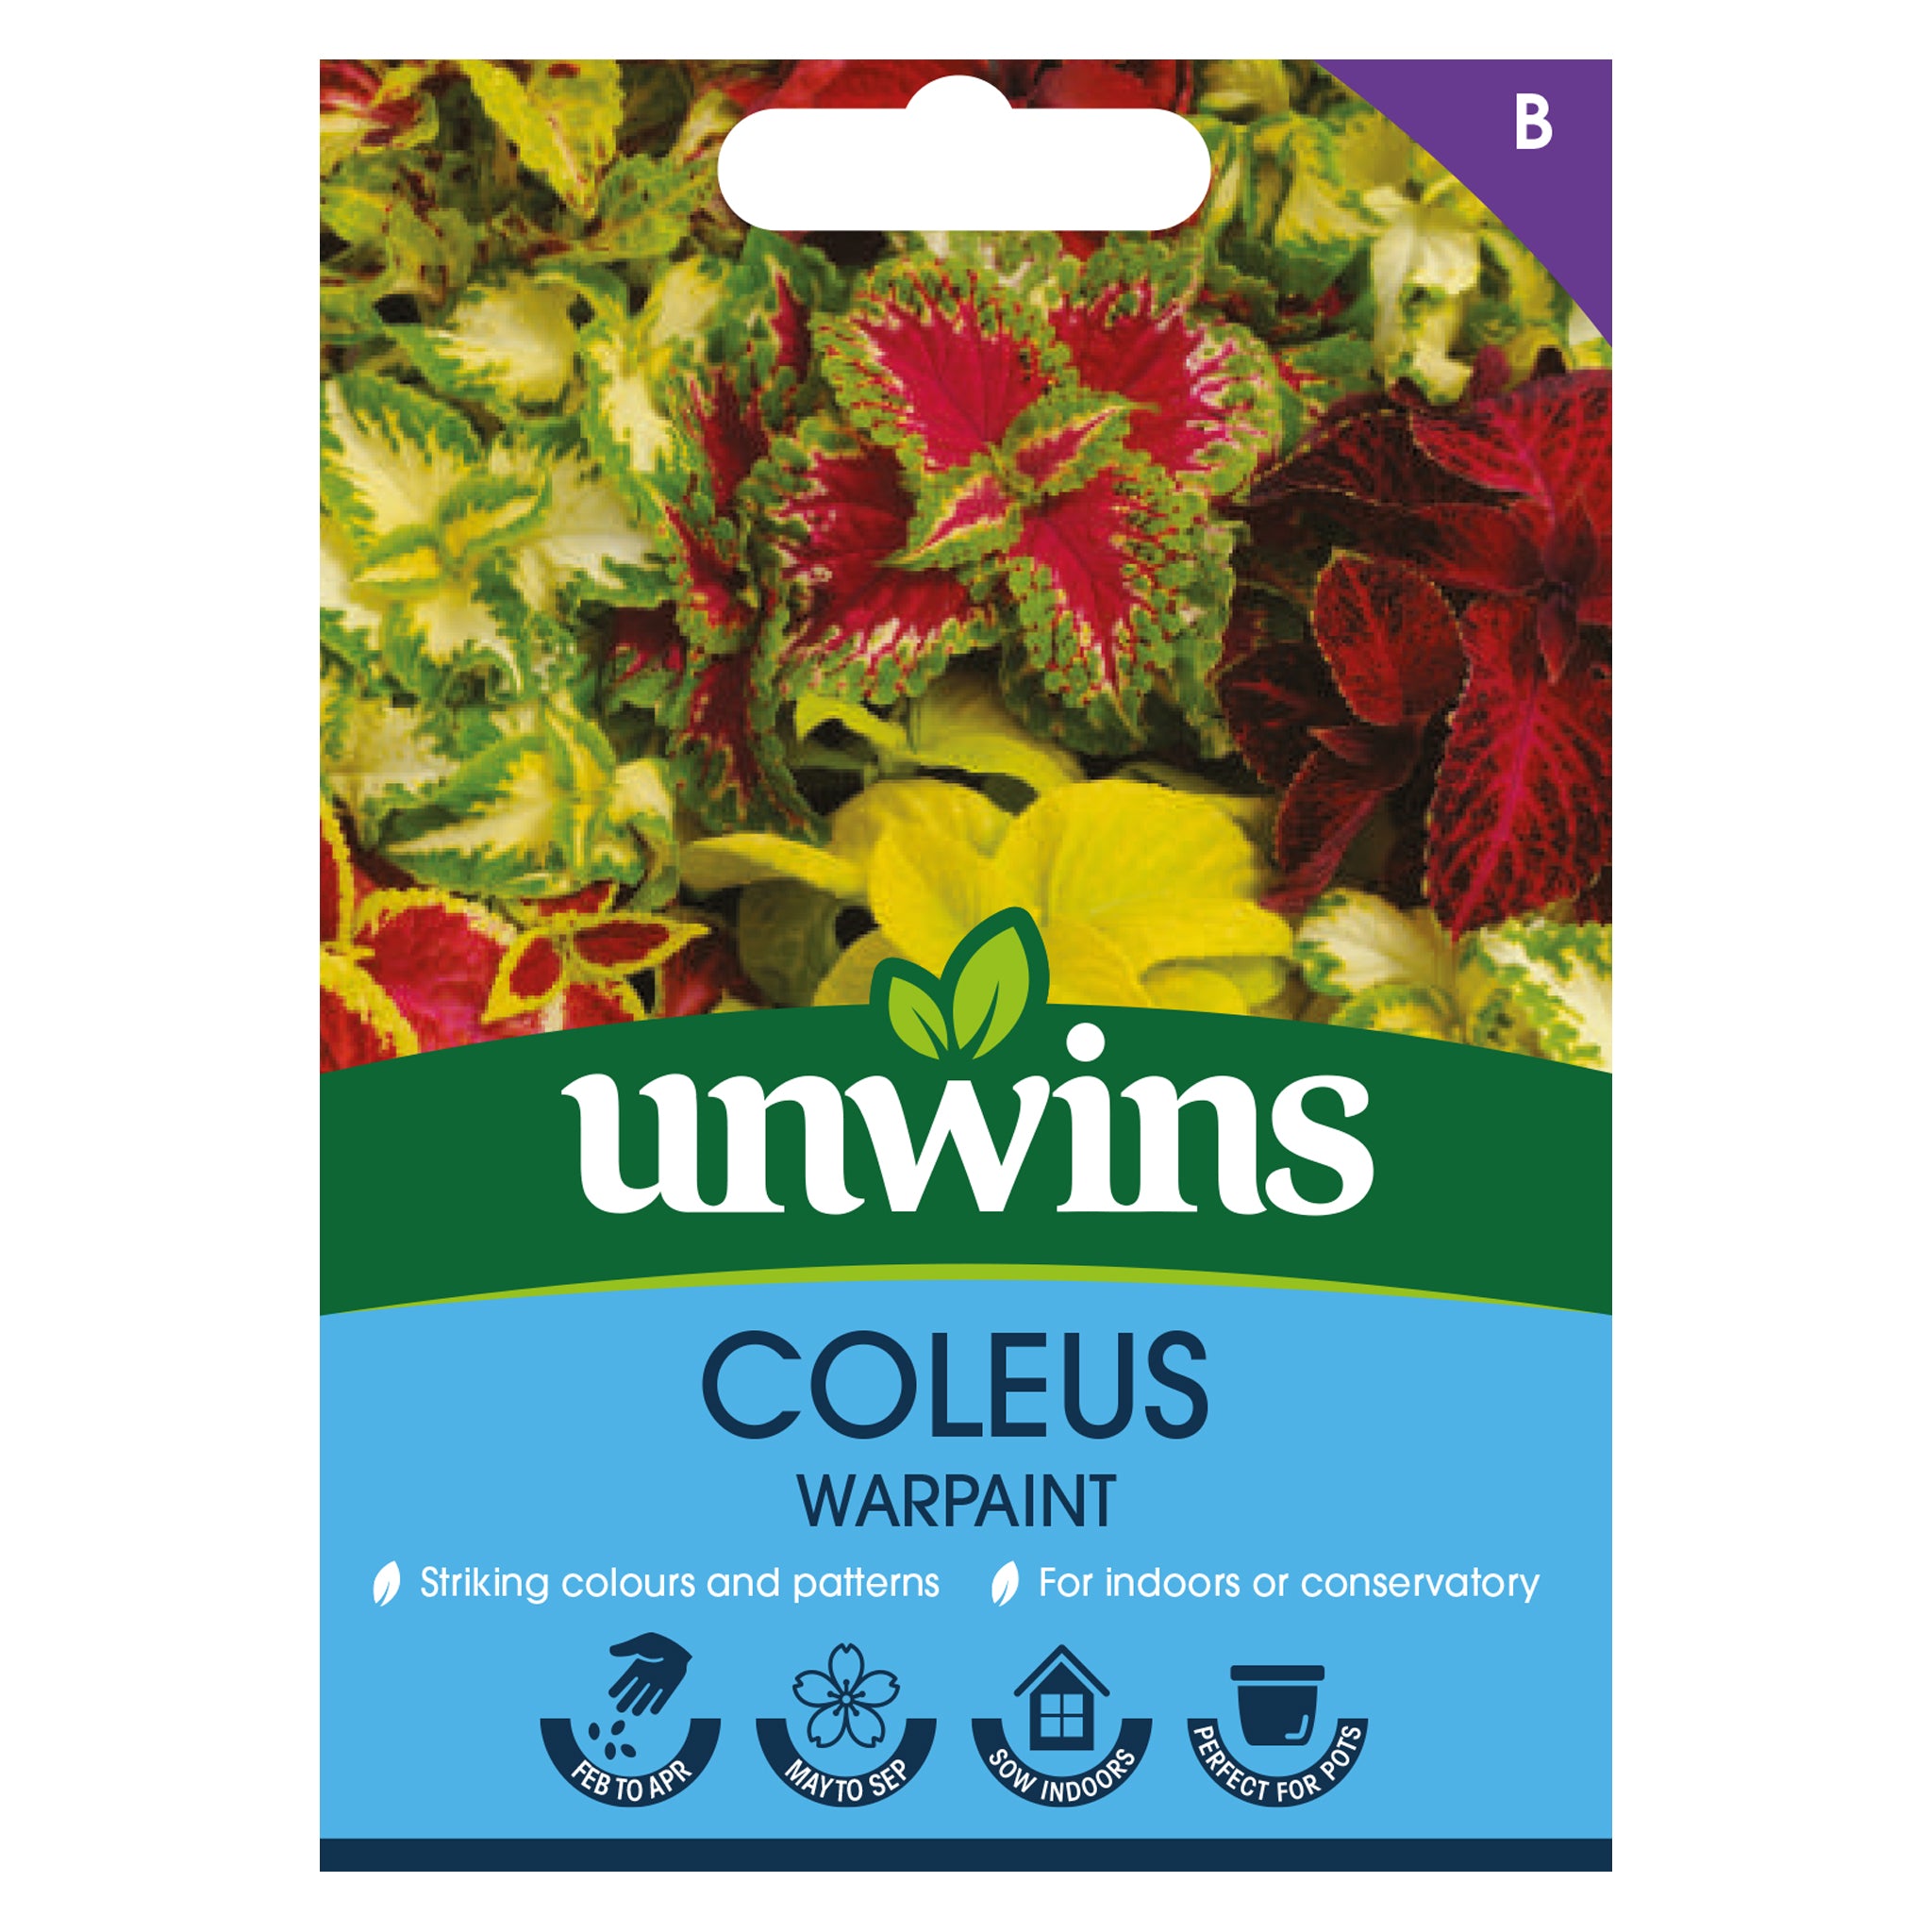 Unwins Coleus Warpaint Seeds